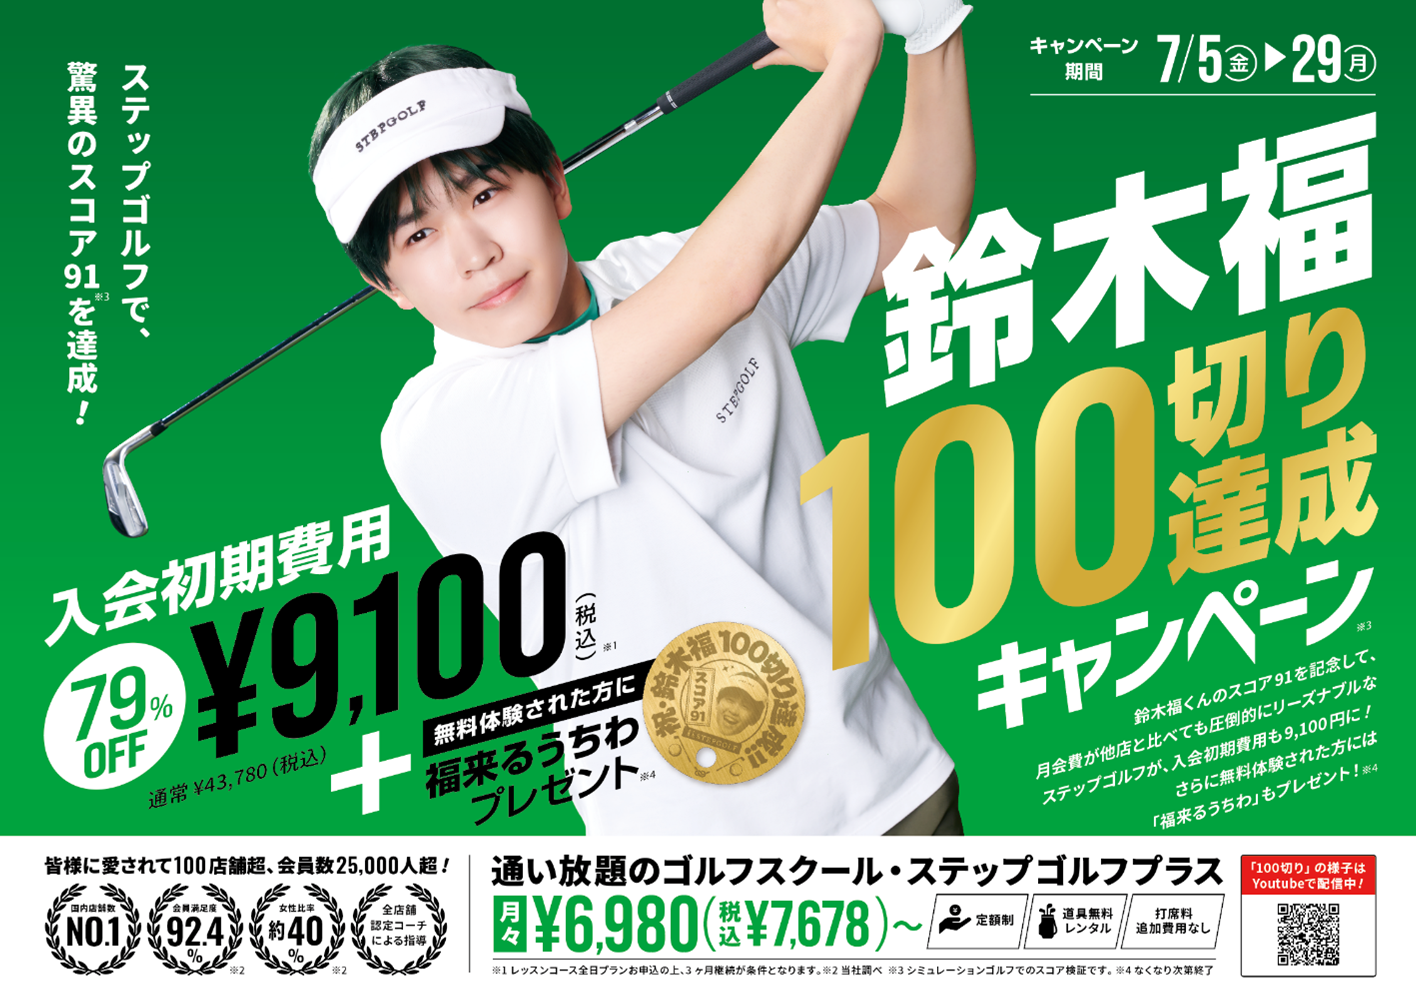 インドアゴルフスクール「ステップゴルフ」で挑戦した1年鈴木福くん　スコア91で100切り達成を発表！達成記念...